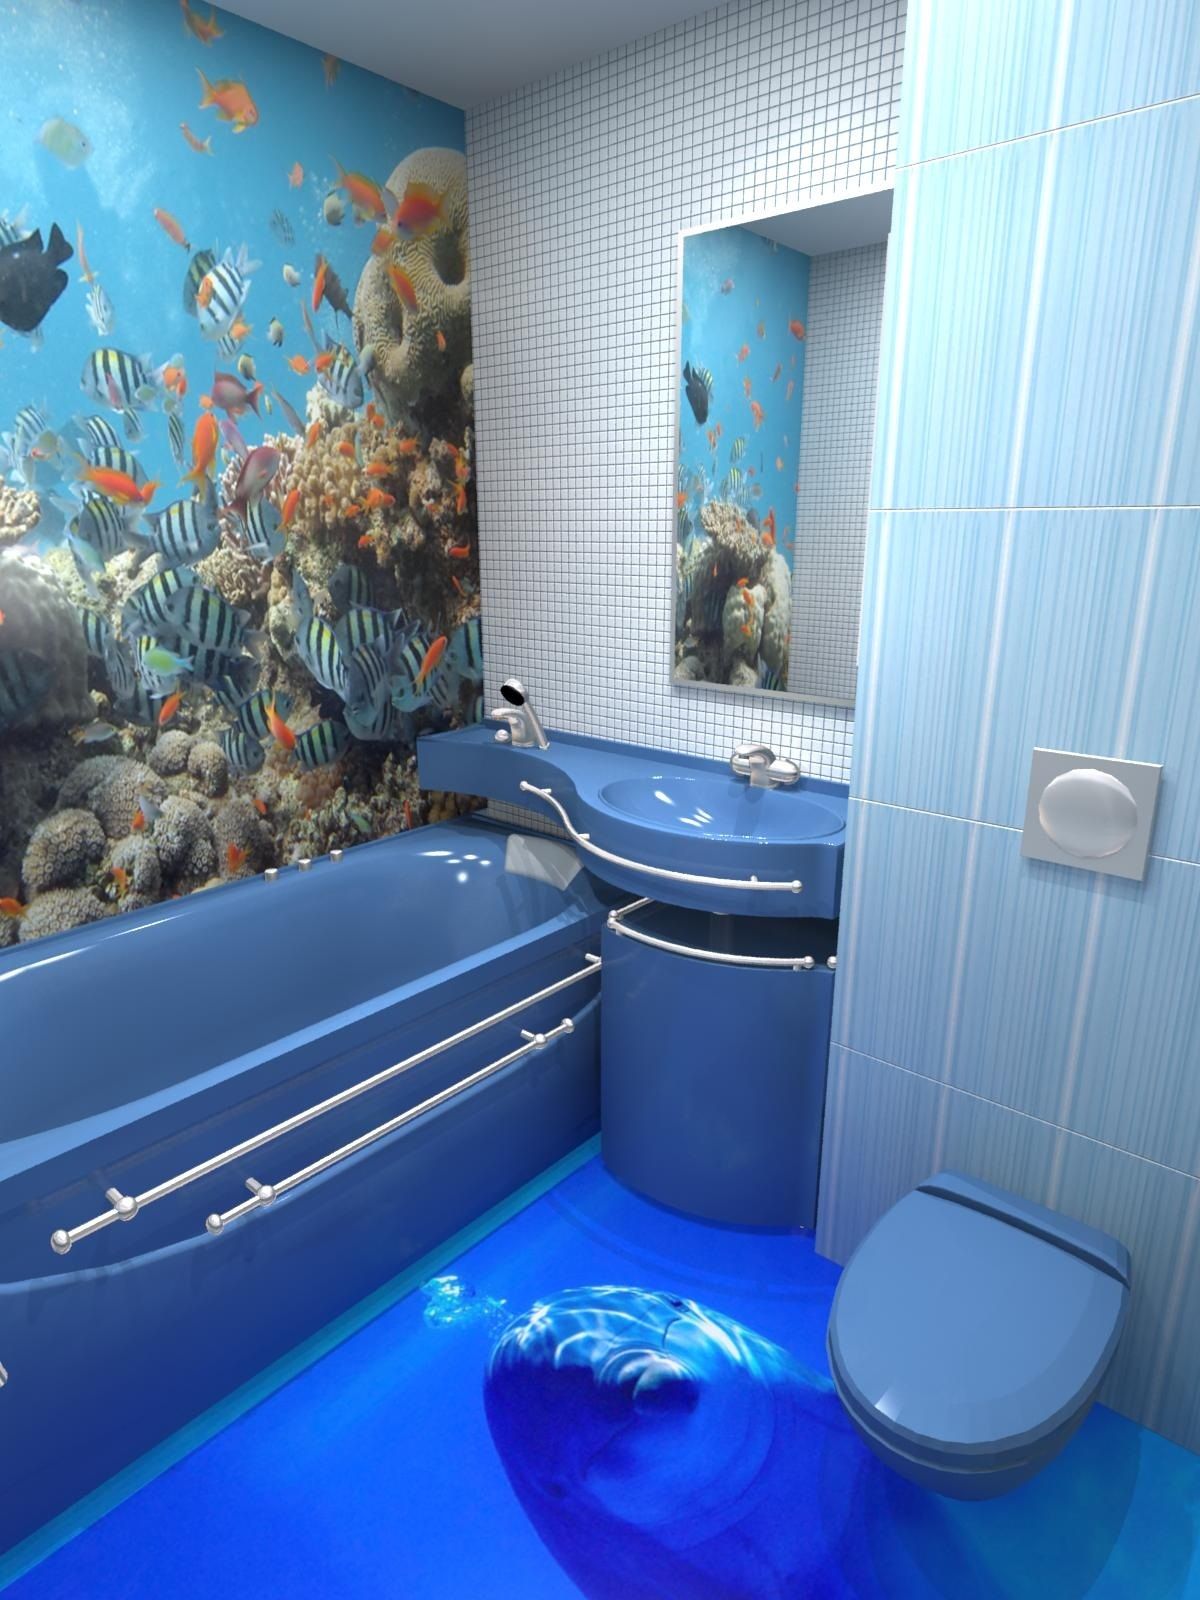 Синяя плитка в полоску в ванной